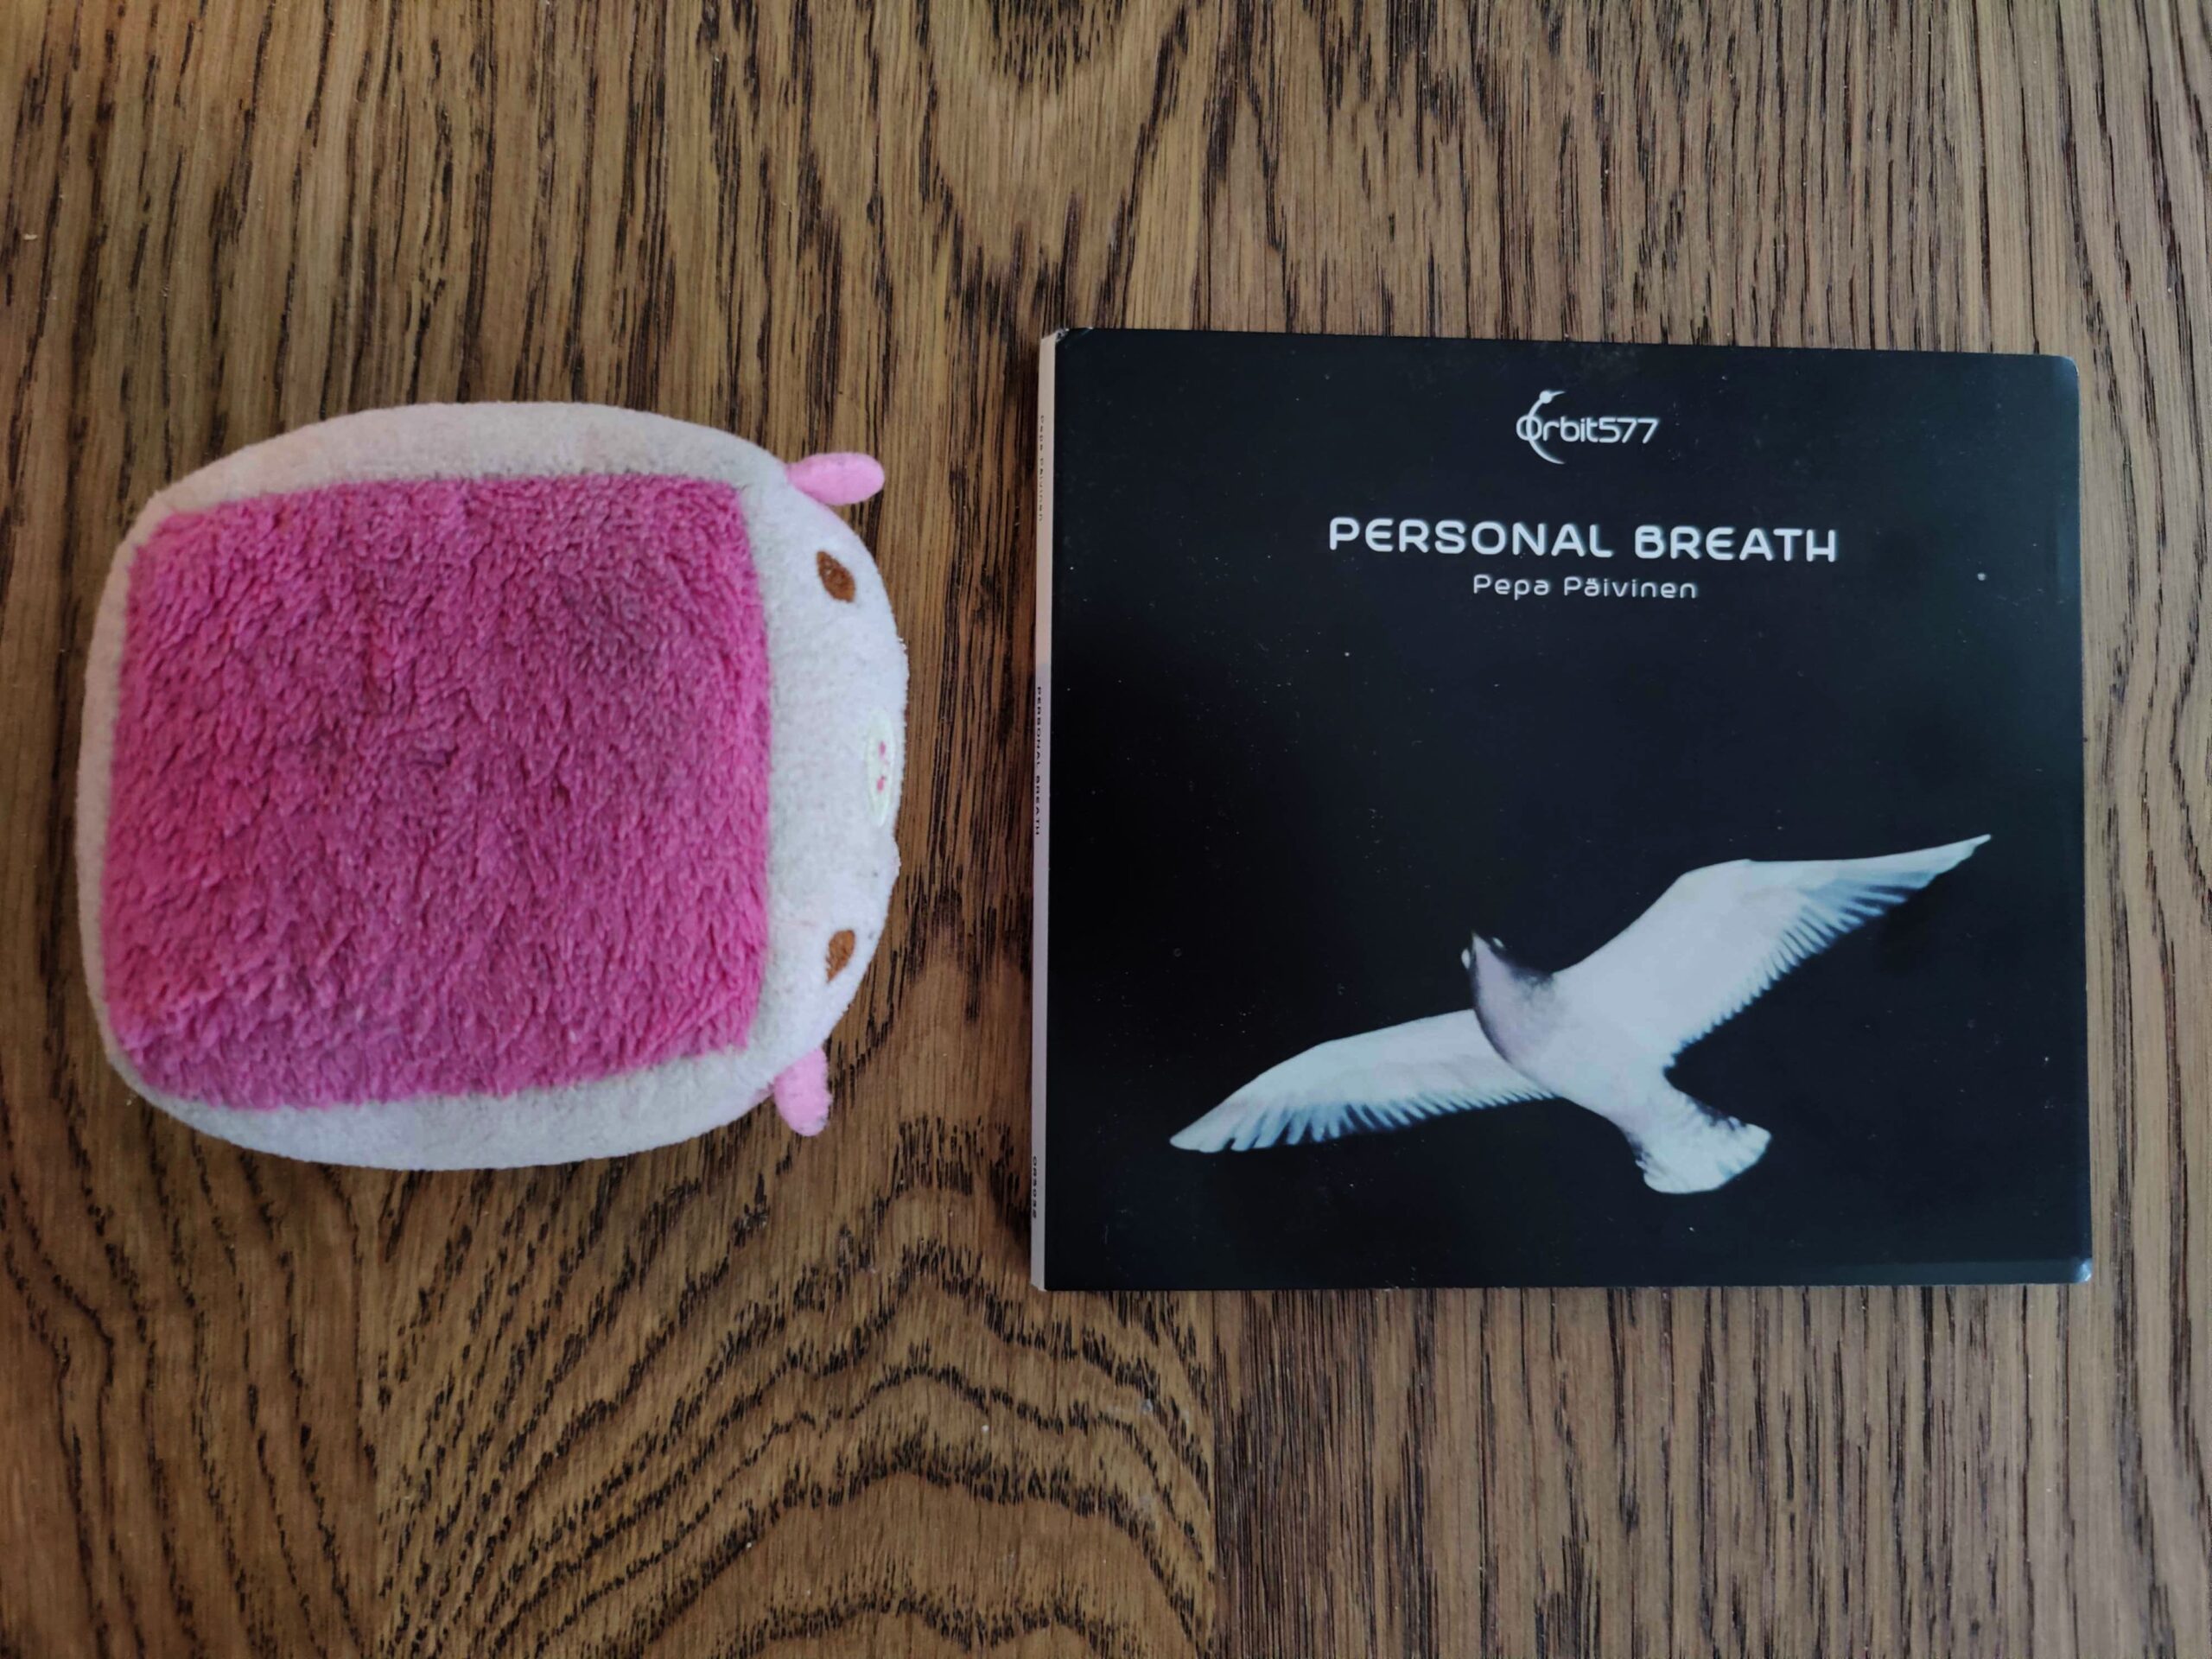 Pepa Päivinen – Personal Breath